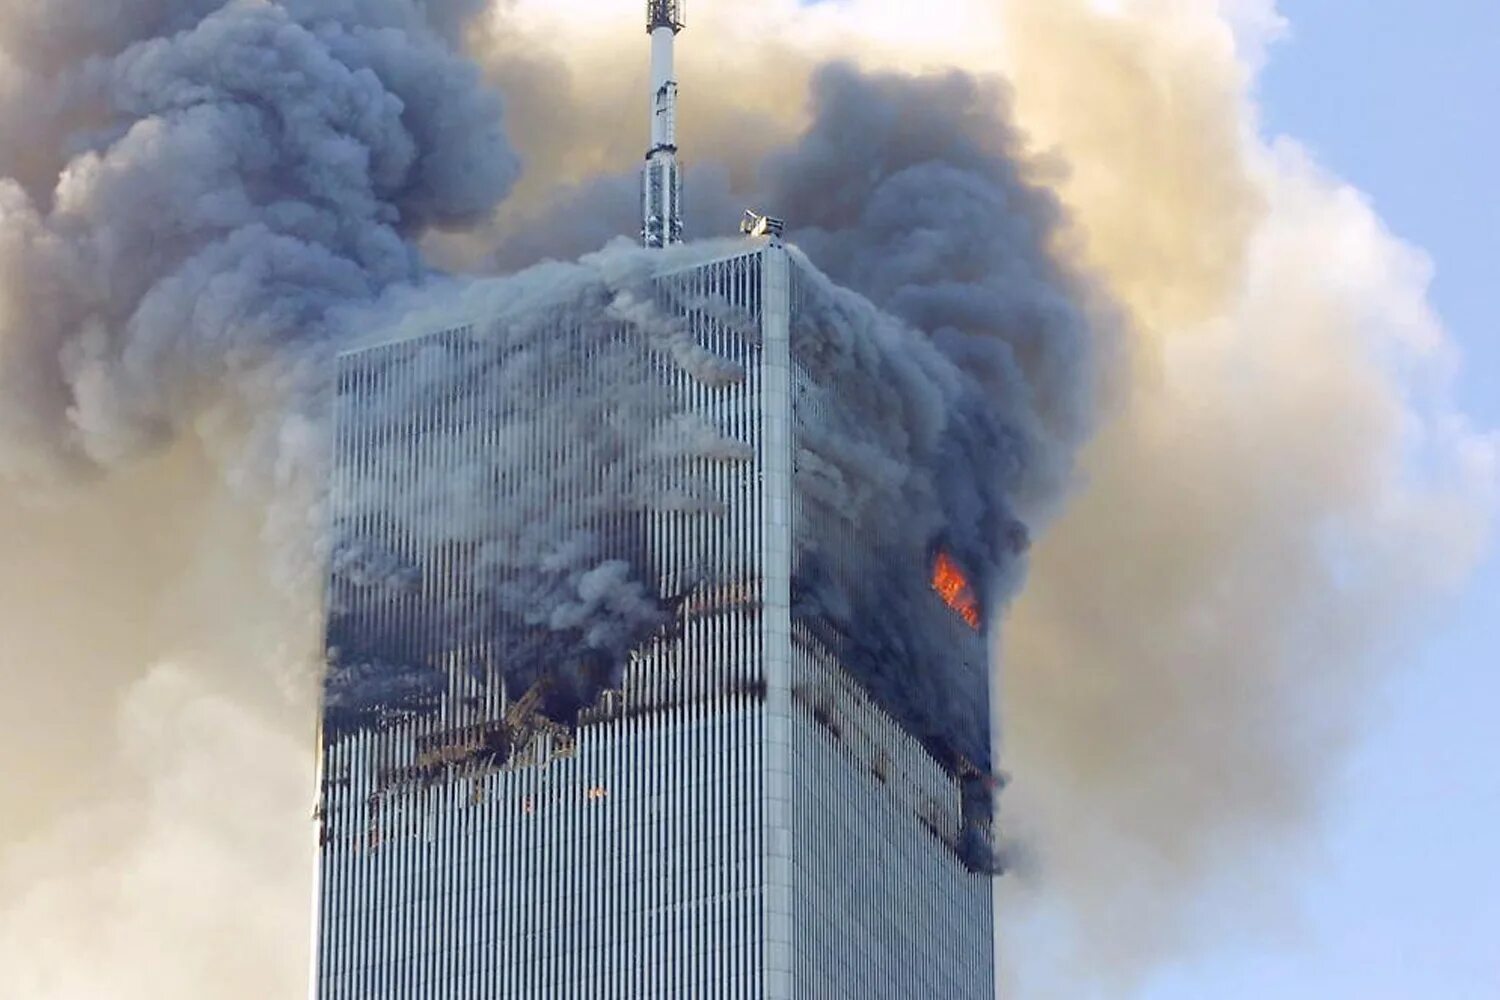 Башни Близнецы в Нью-Йорке 11 сентября. ВТЦ Нью-Йорк 2001. Башни ВТЦ 11 сентября 2001. Северная башня ВТЦ 11 сентября.